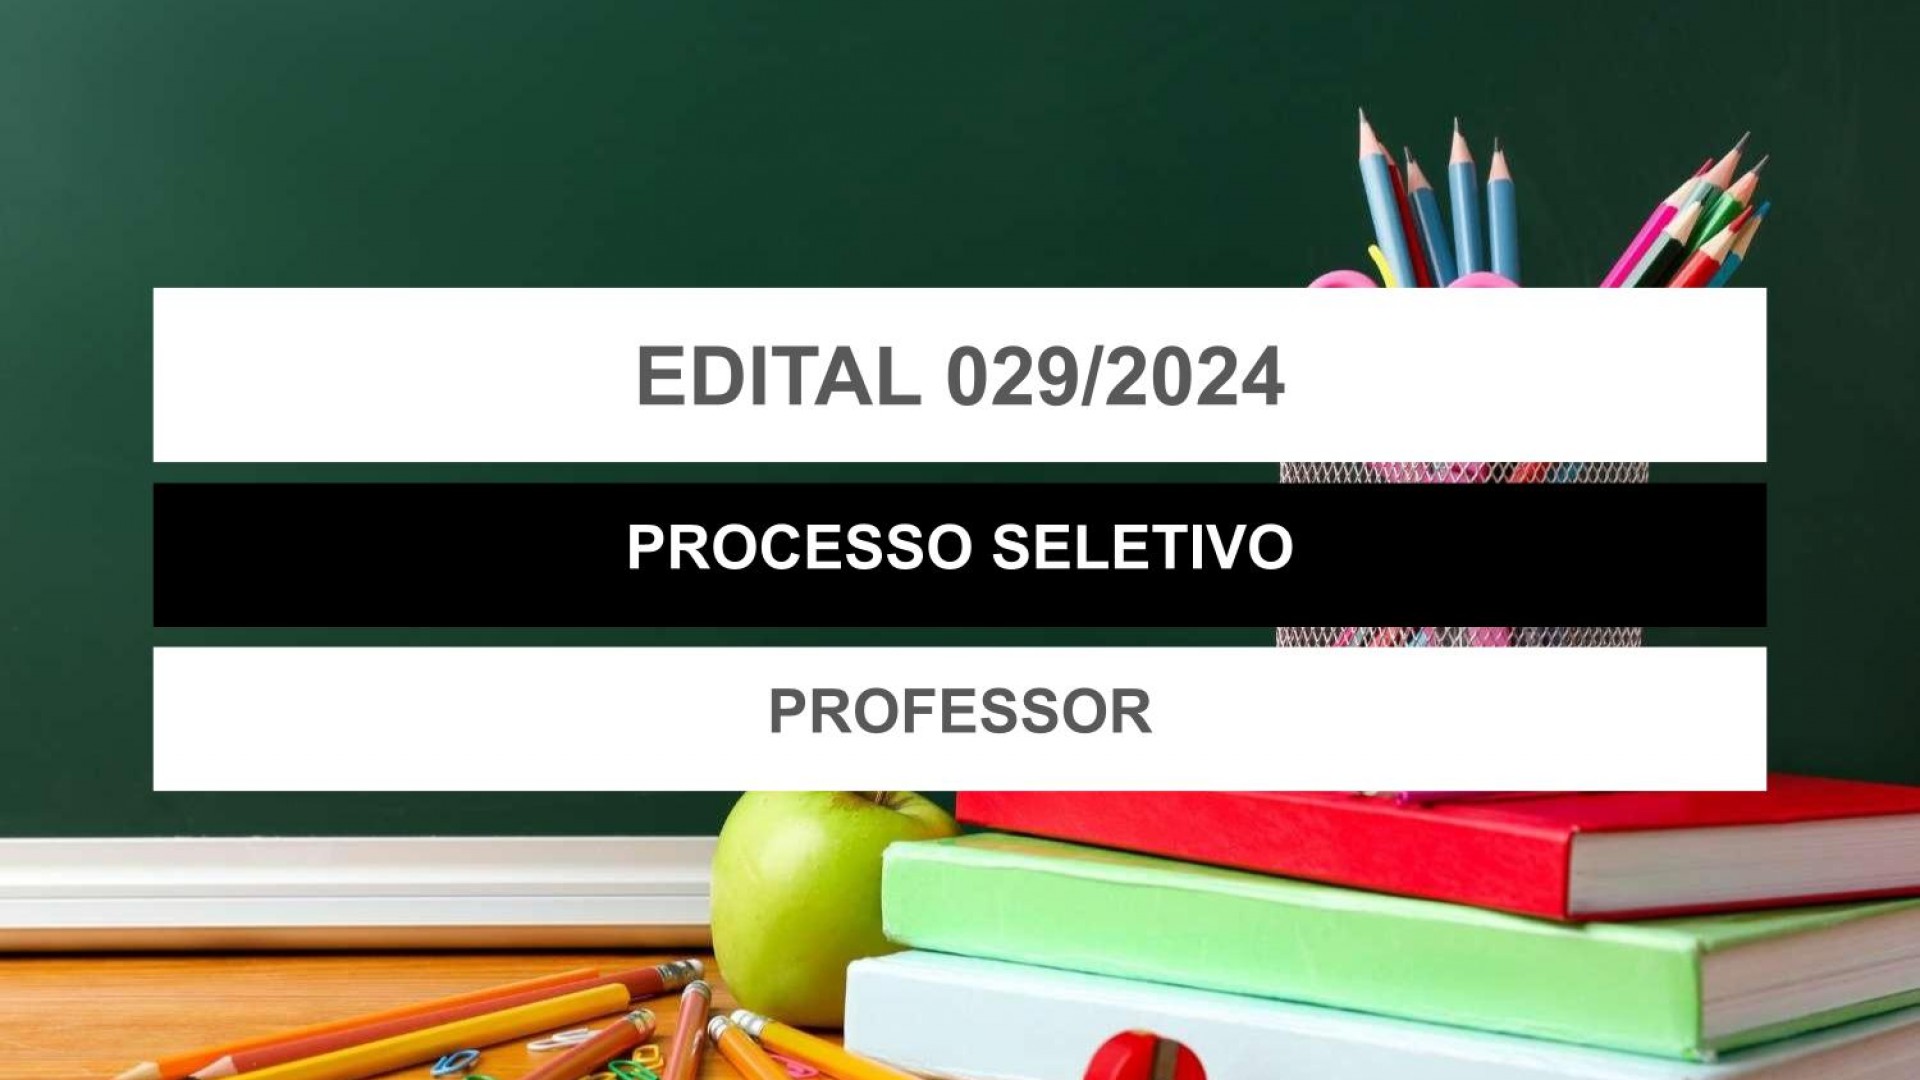 EDITAL EDUCAÇÃO Nº 029/2024 - 90 DIAS